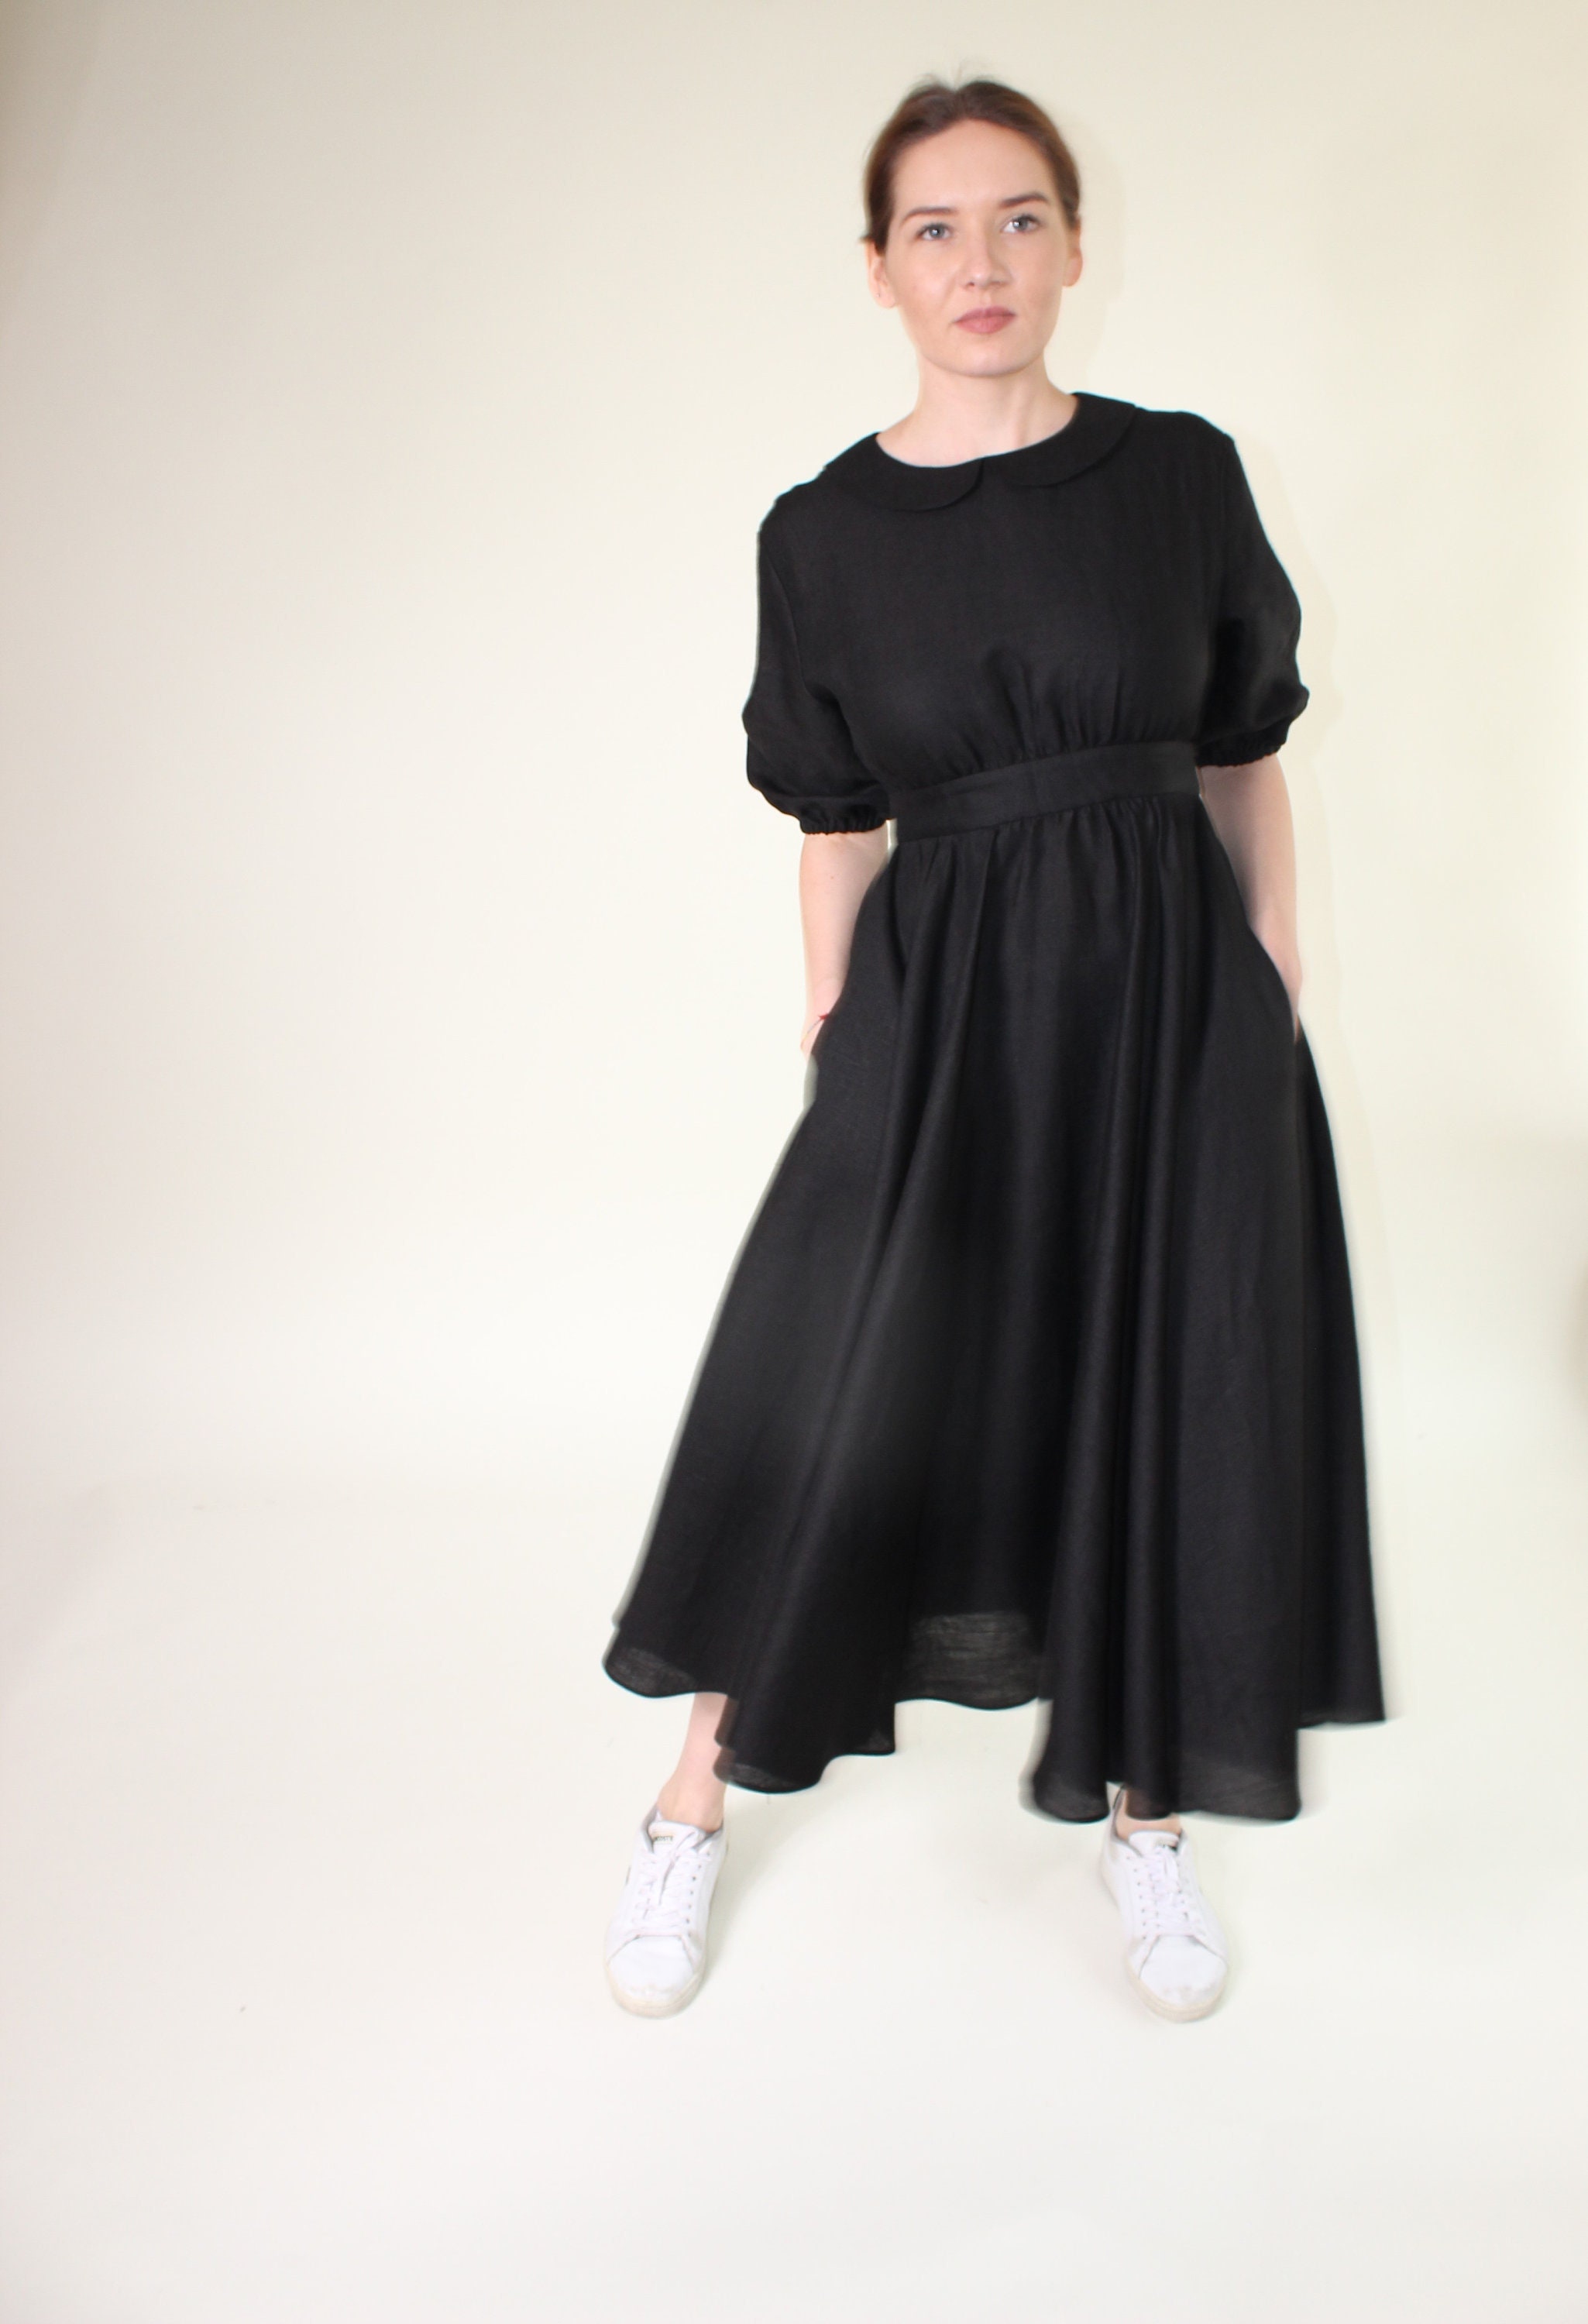 Organic Linen Dress With Pockets Peter Pan Collar High Waist - Etsy